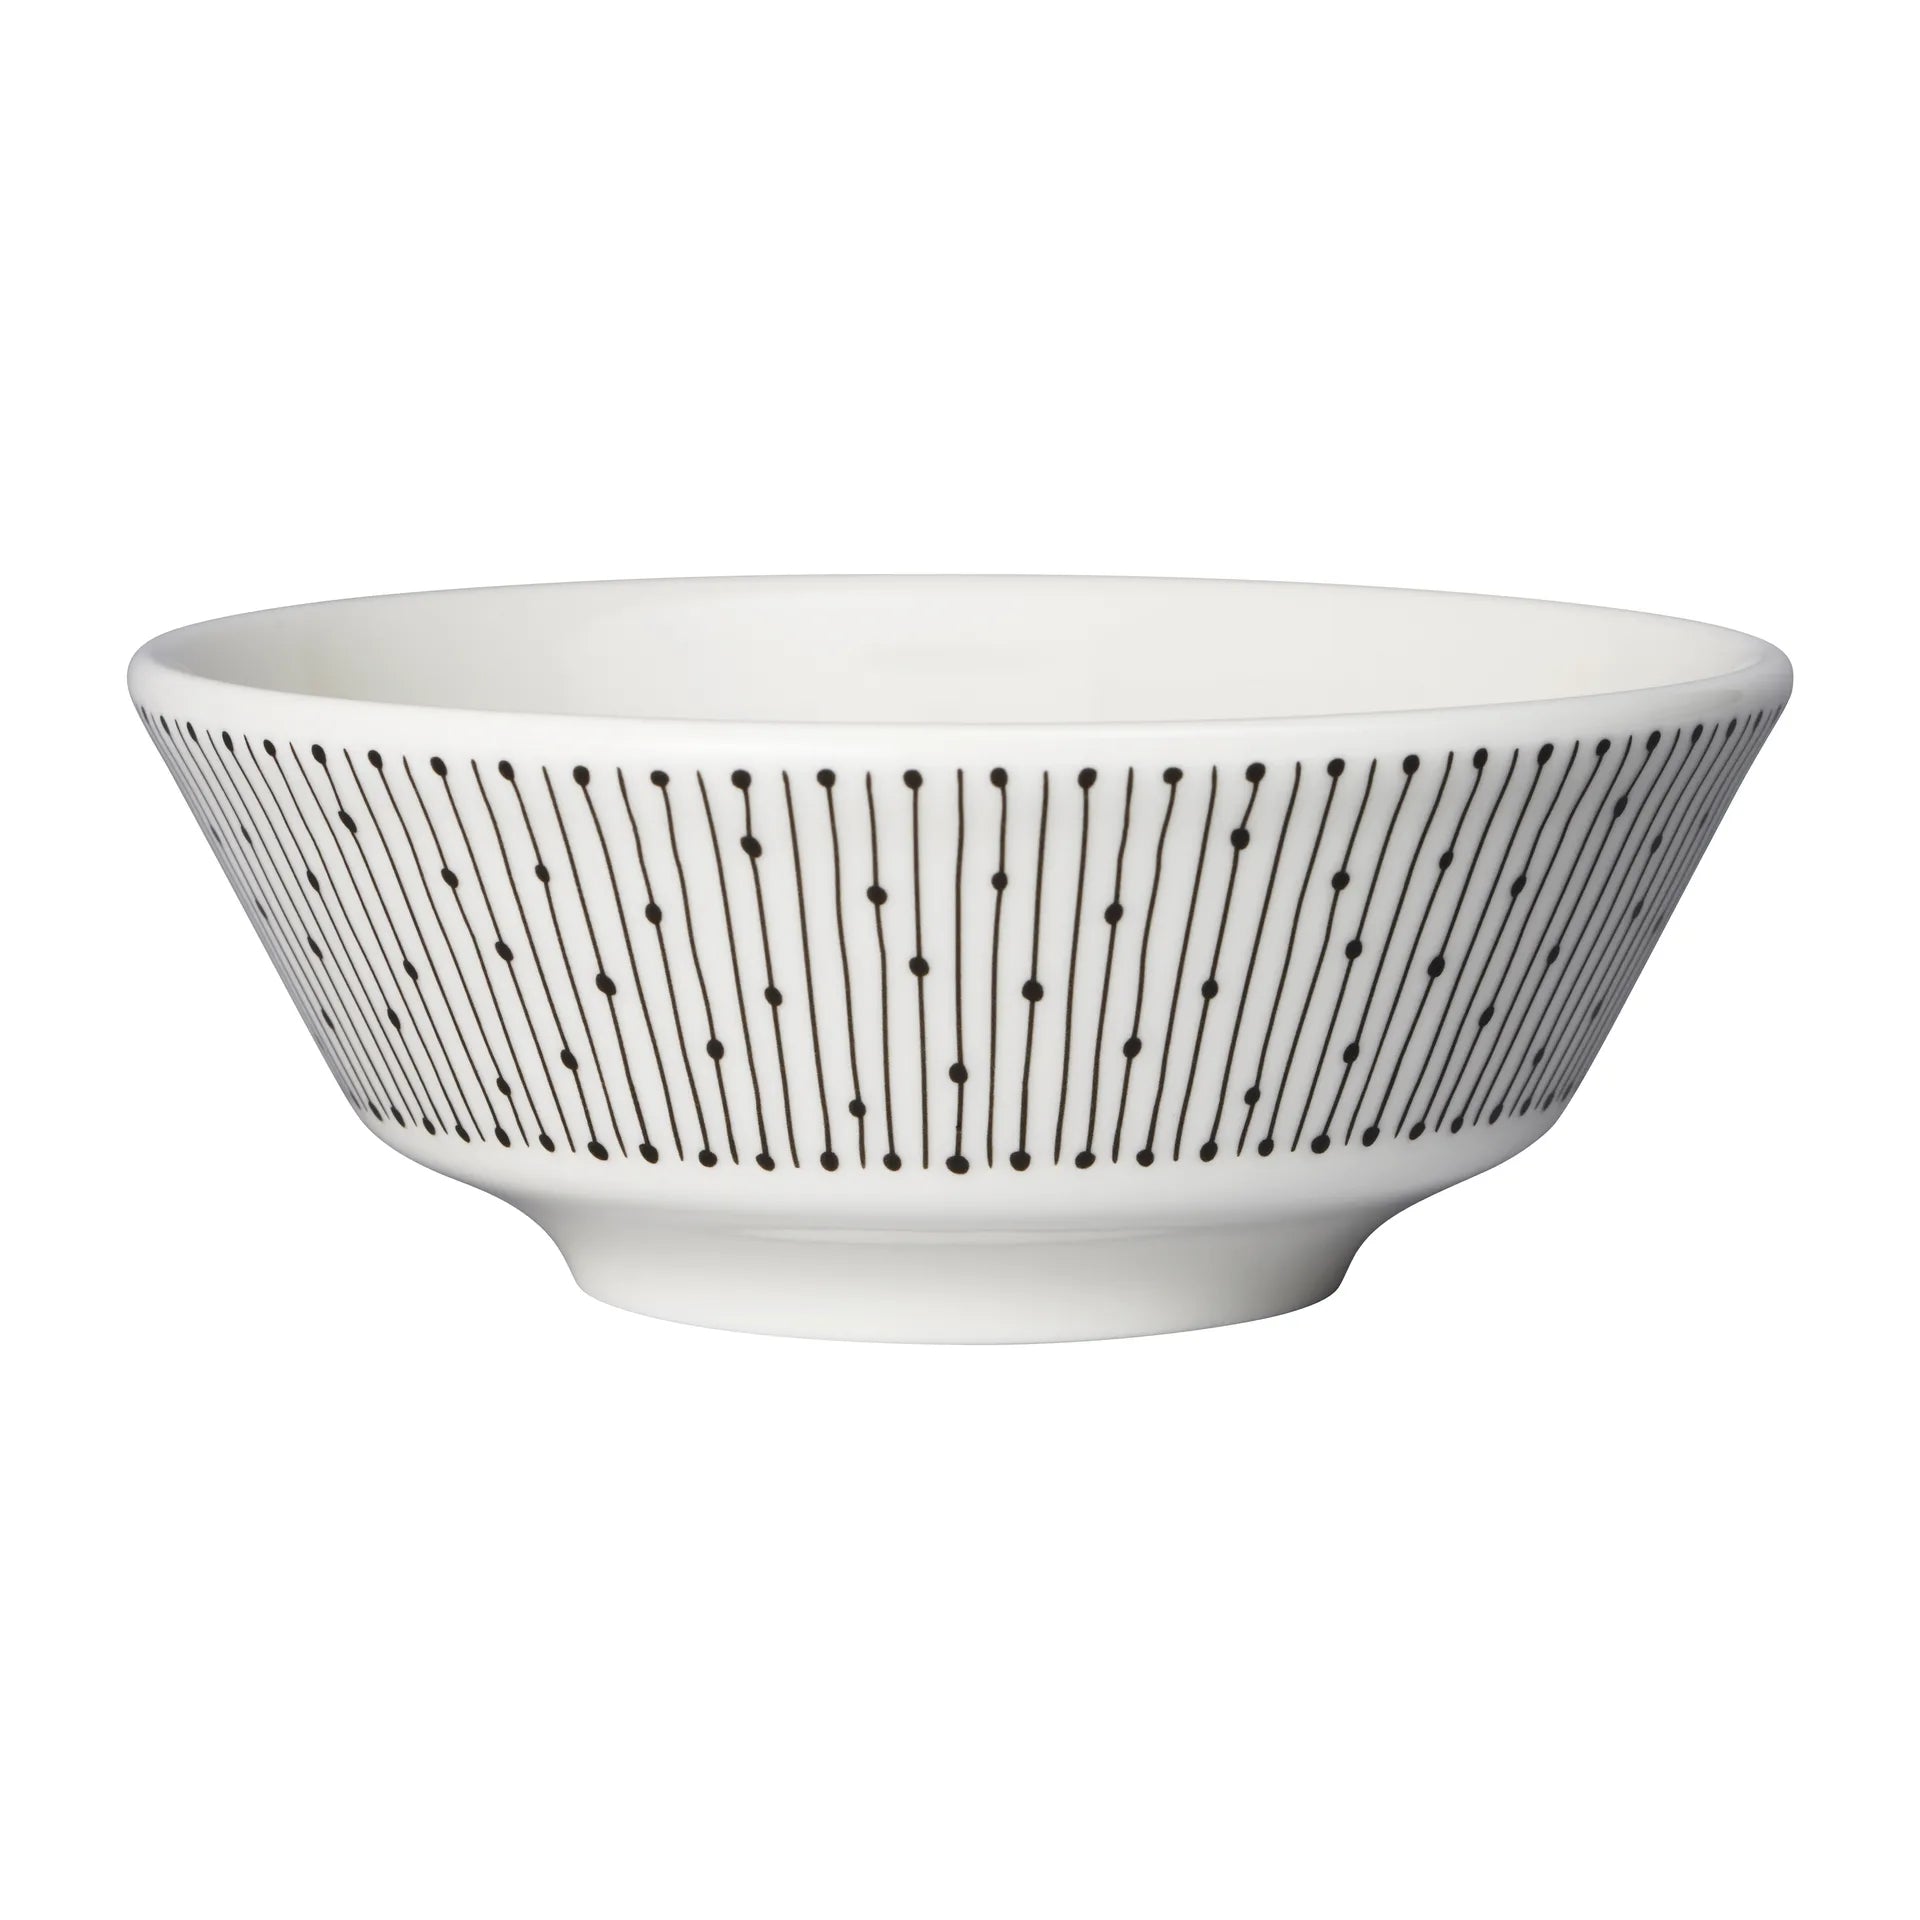 Mainio Sarastus bowl Ø13 cm - Black-white